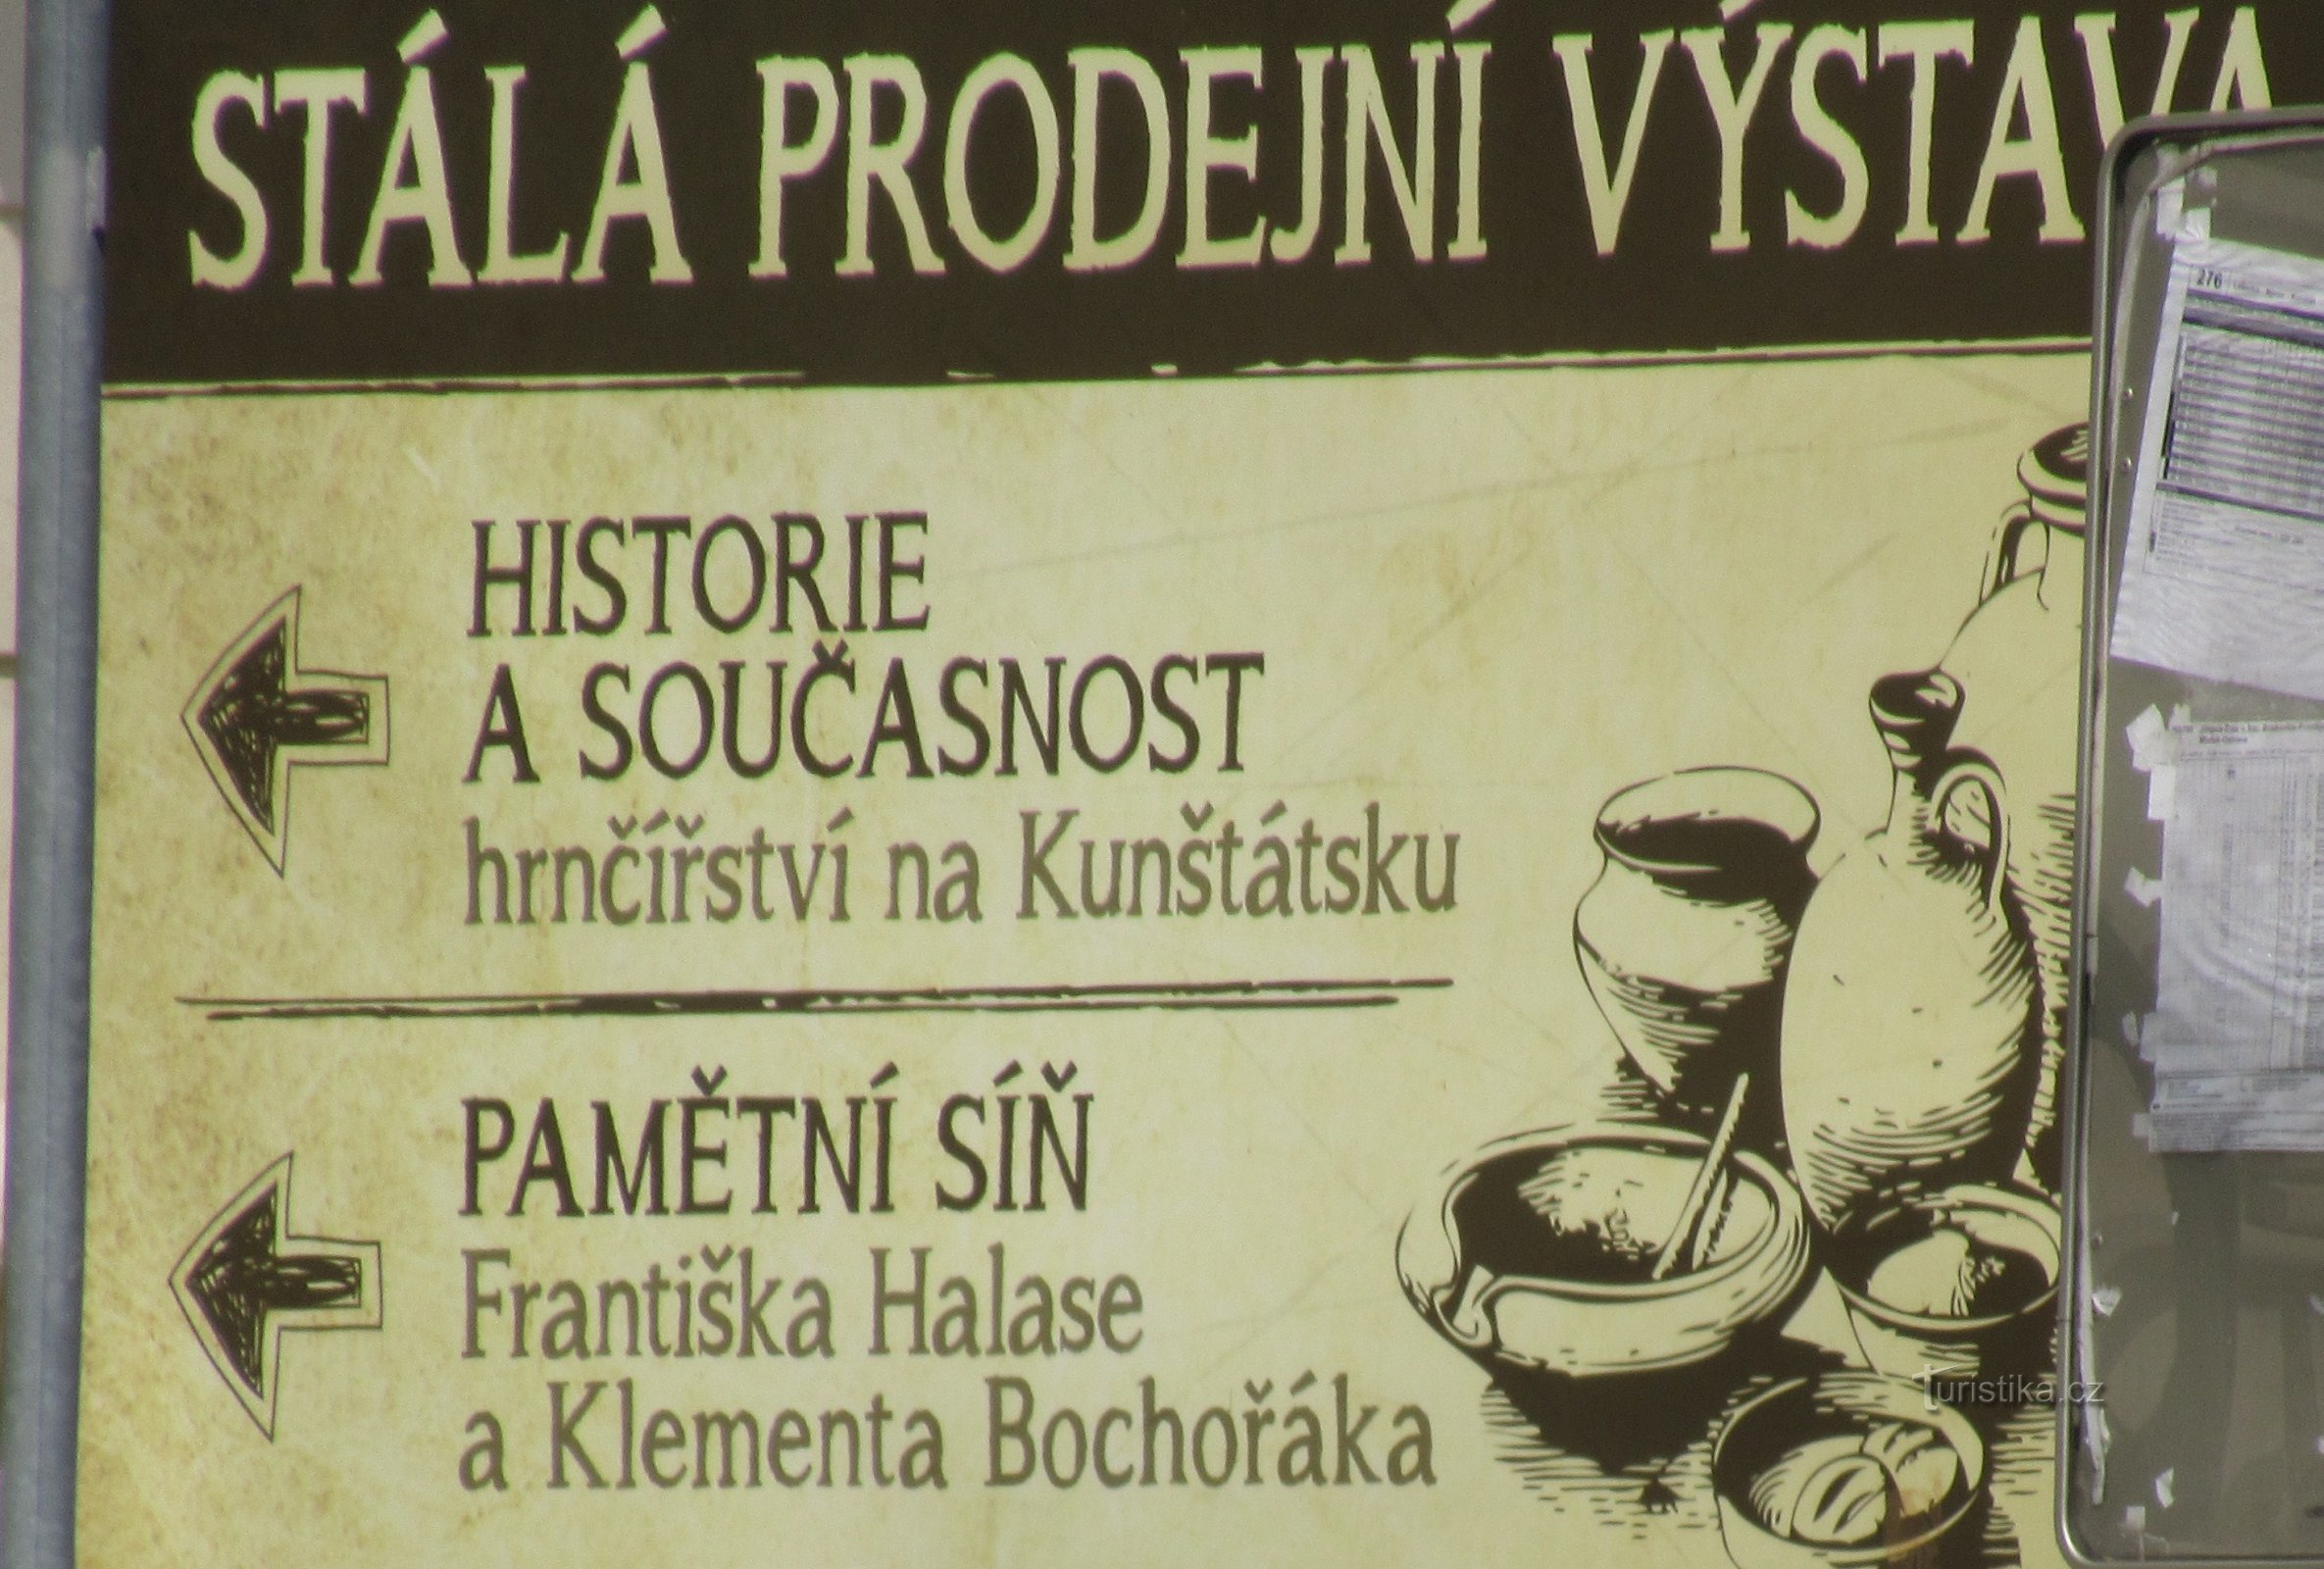 Exposition de poterie à l'infocentre de la ville de Kunštát